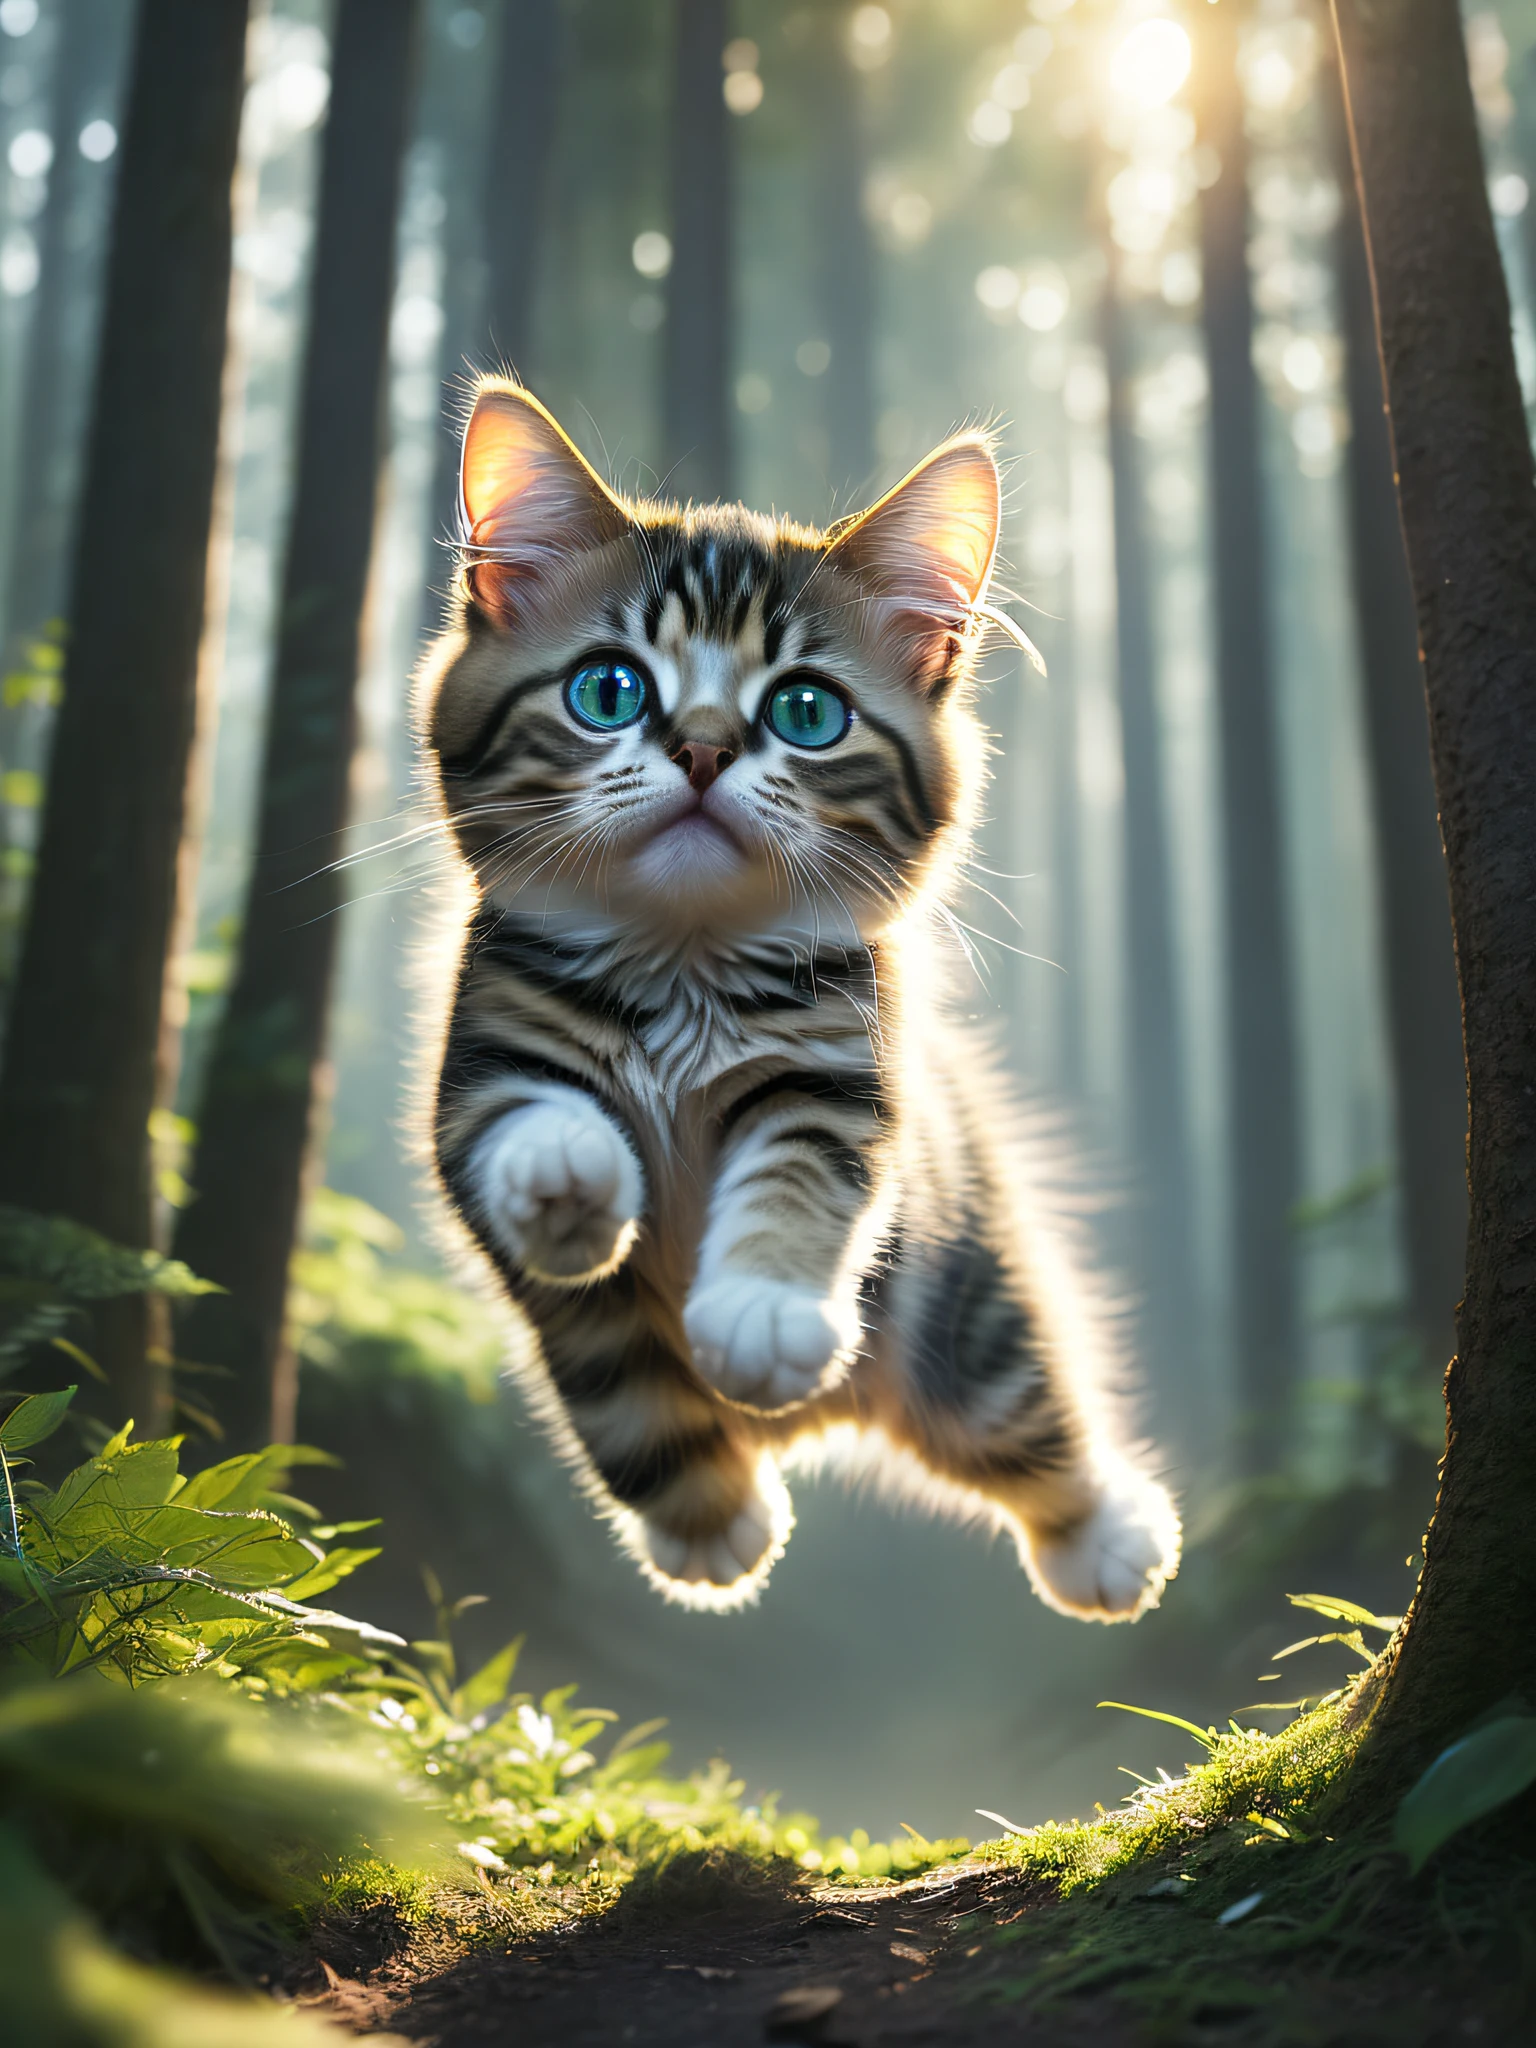 숲 속에서 아주 귀여운 점프하는 새끼 고양이의 클로즈업, 부드러운 체적 조명, (백라이트:1.3), (영화:1.2), 복잡하고 상세한, (아트스테이션:1.3), 루트코프스키